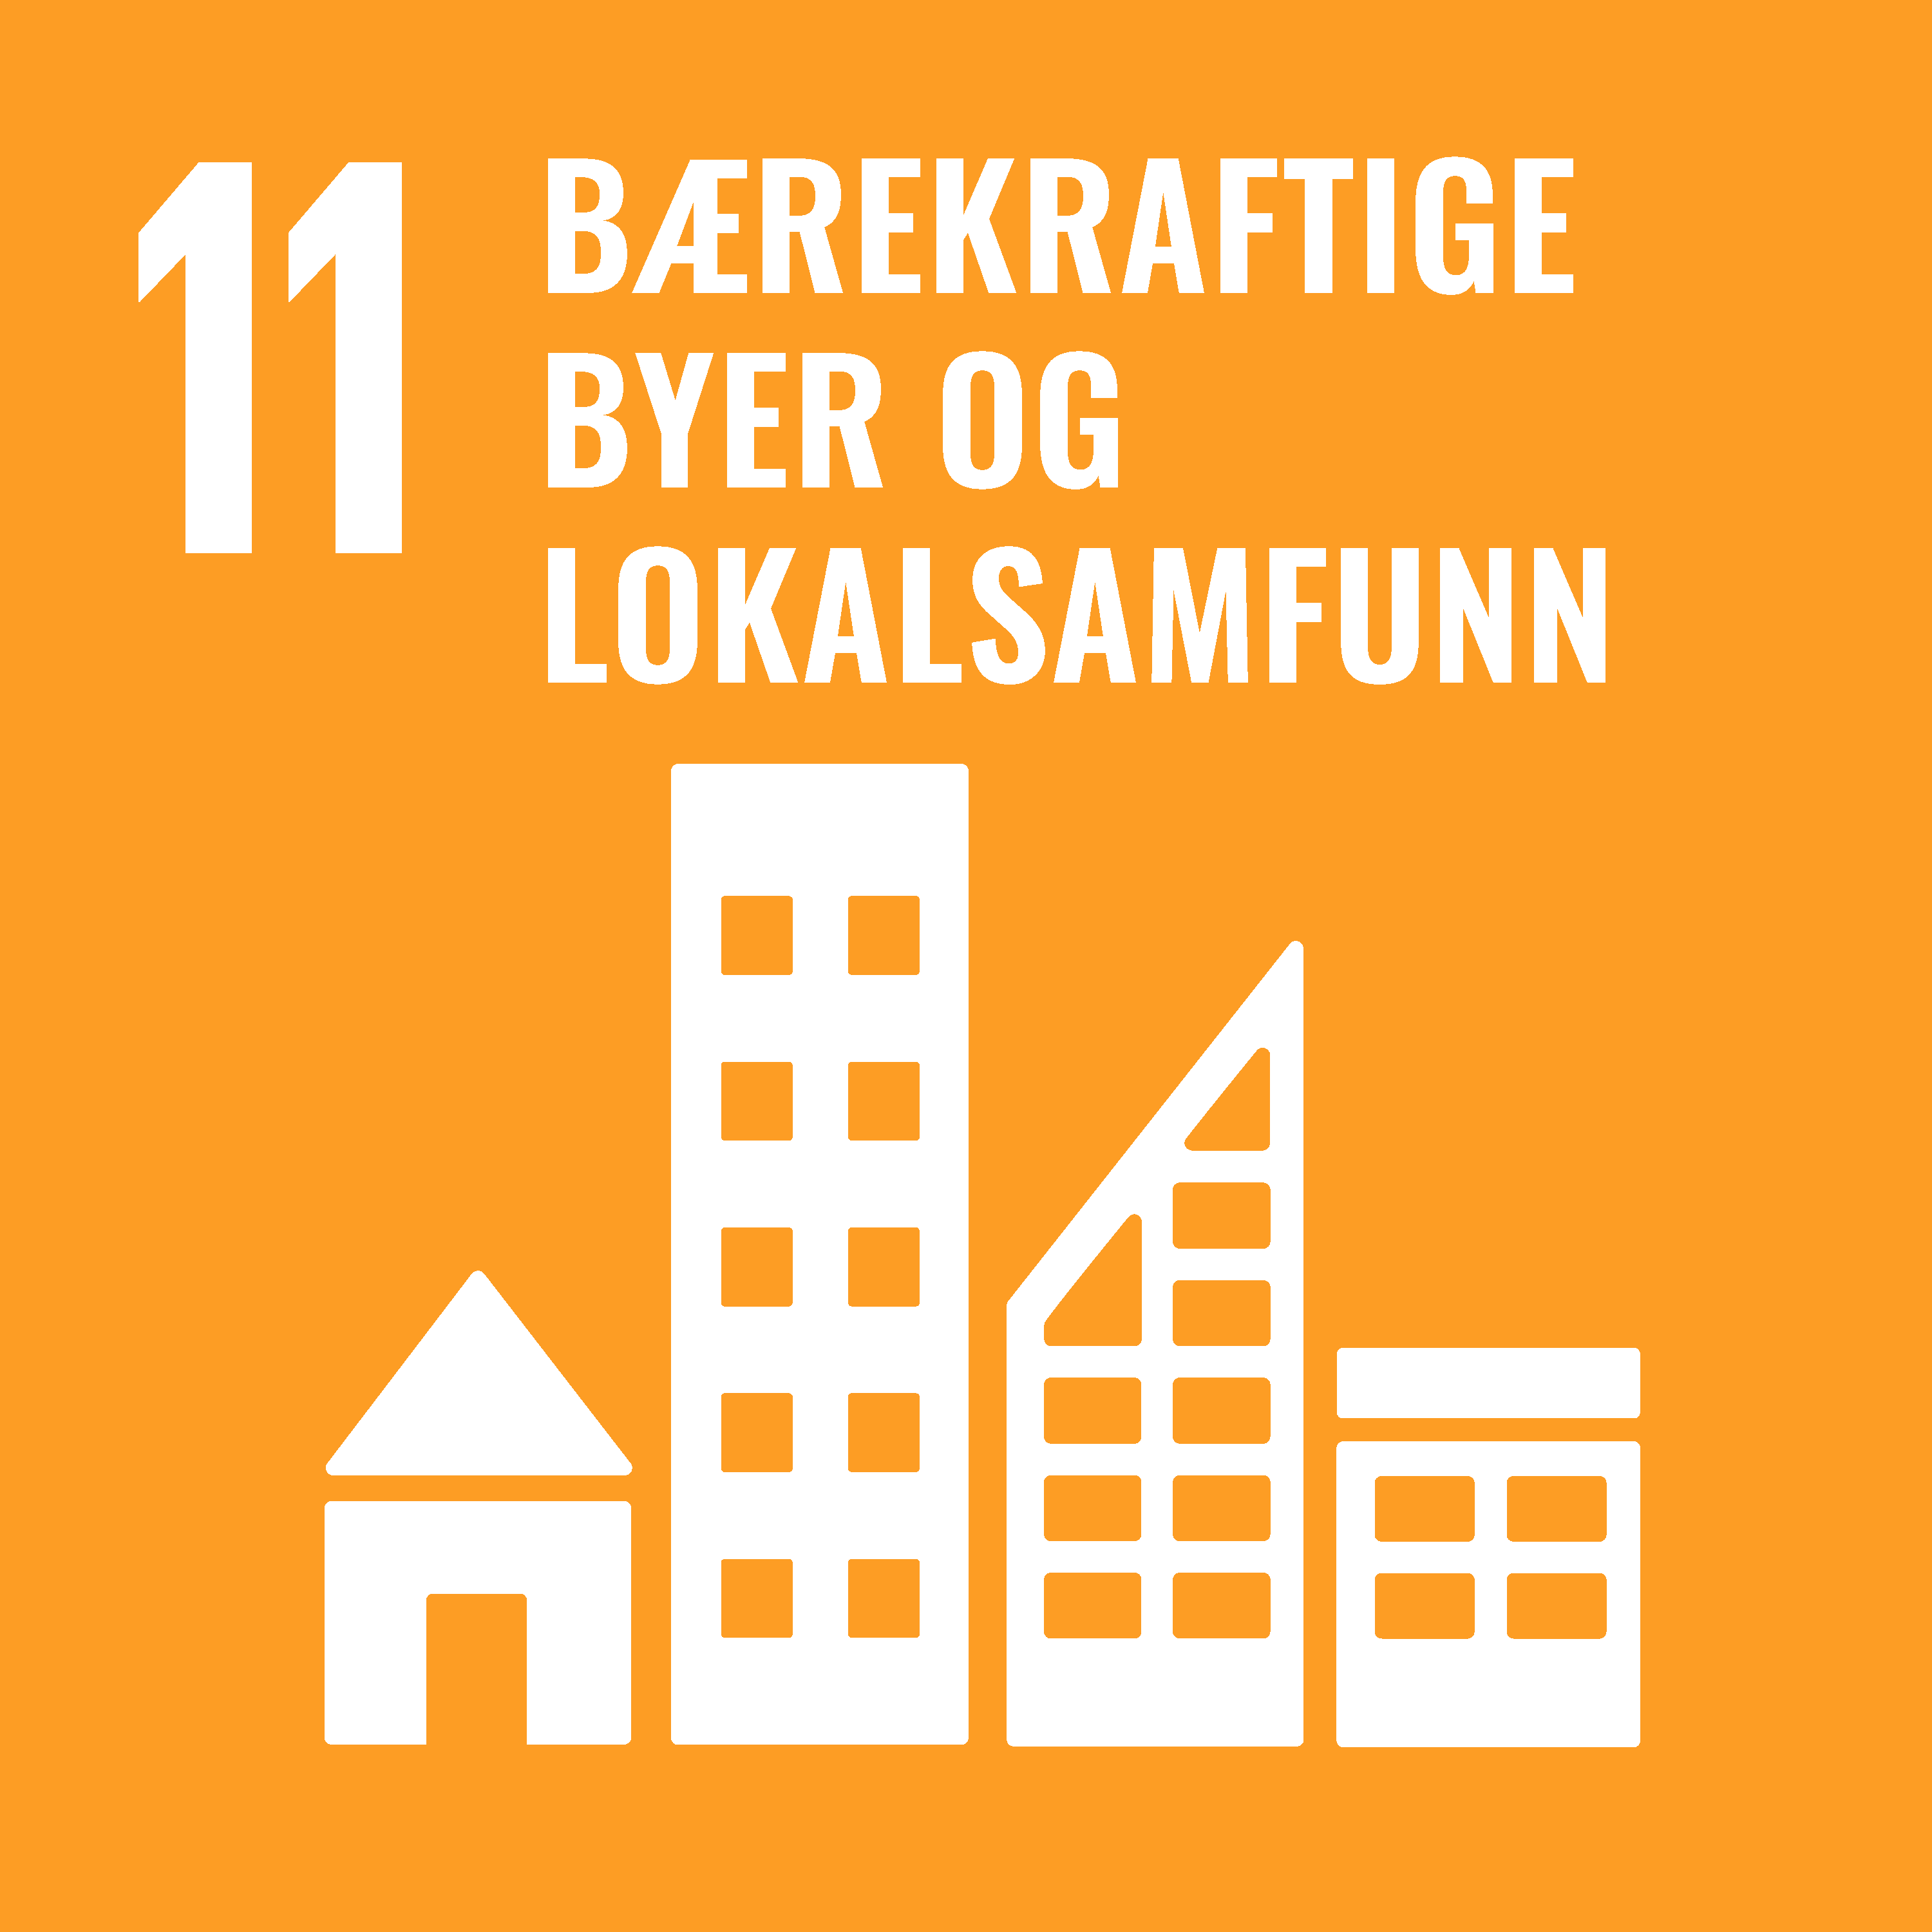 Bærekraftige byer og lokalsamfunn (SDG-11)